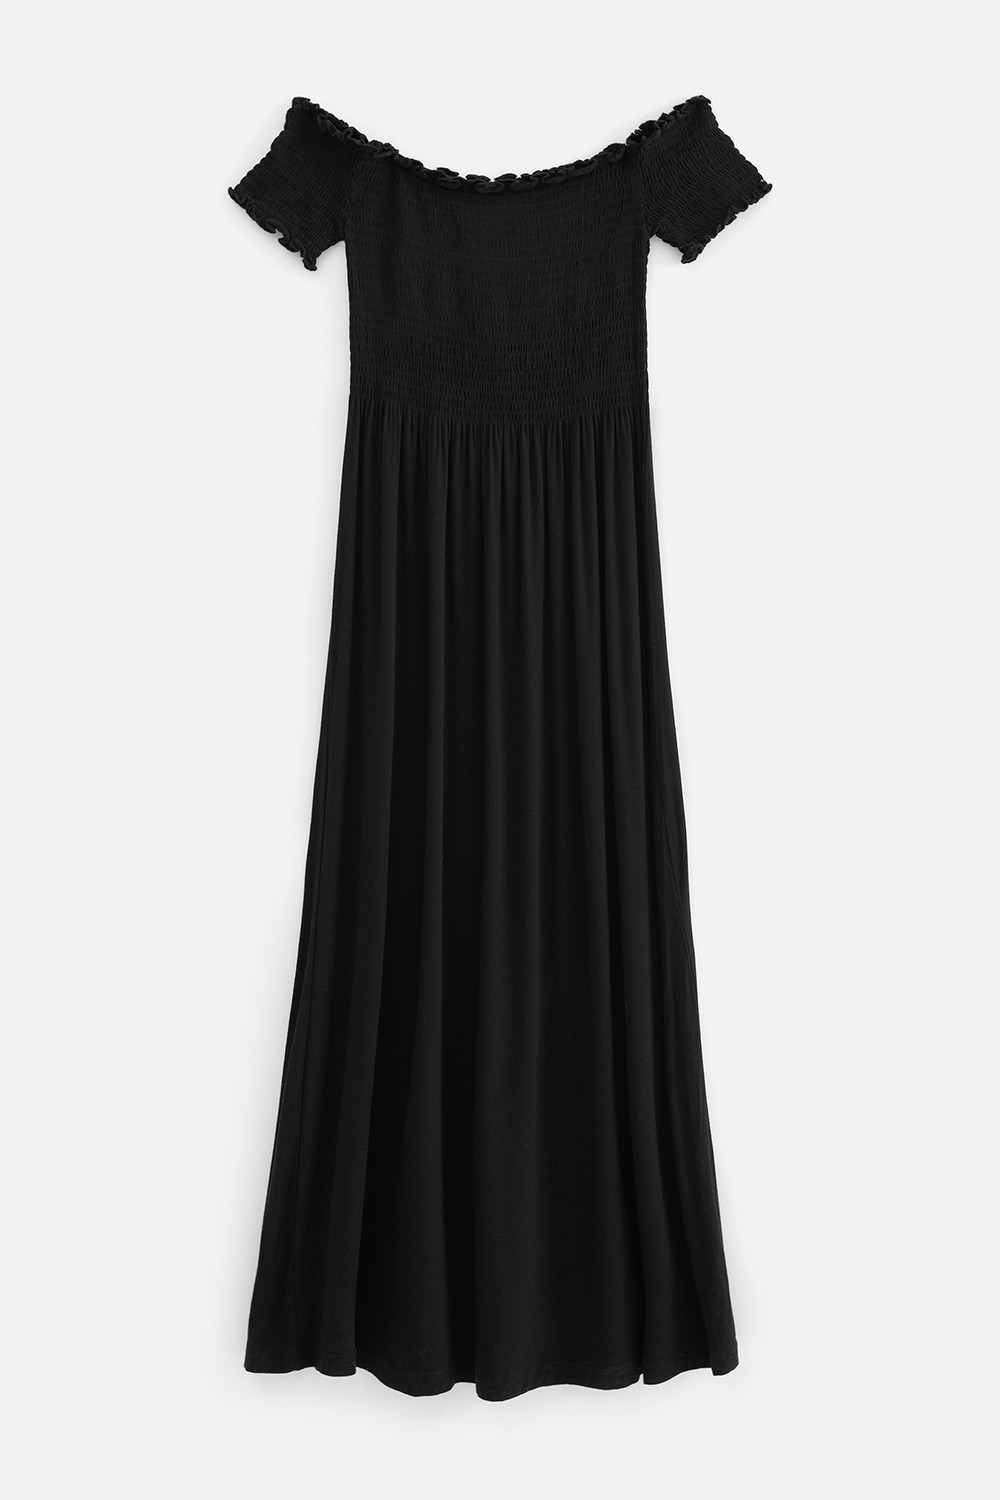 Повседневное платье женское Concept Club 10200200145 черное S